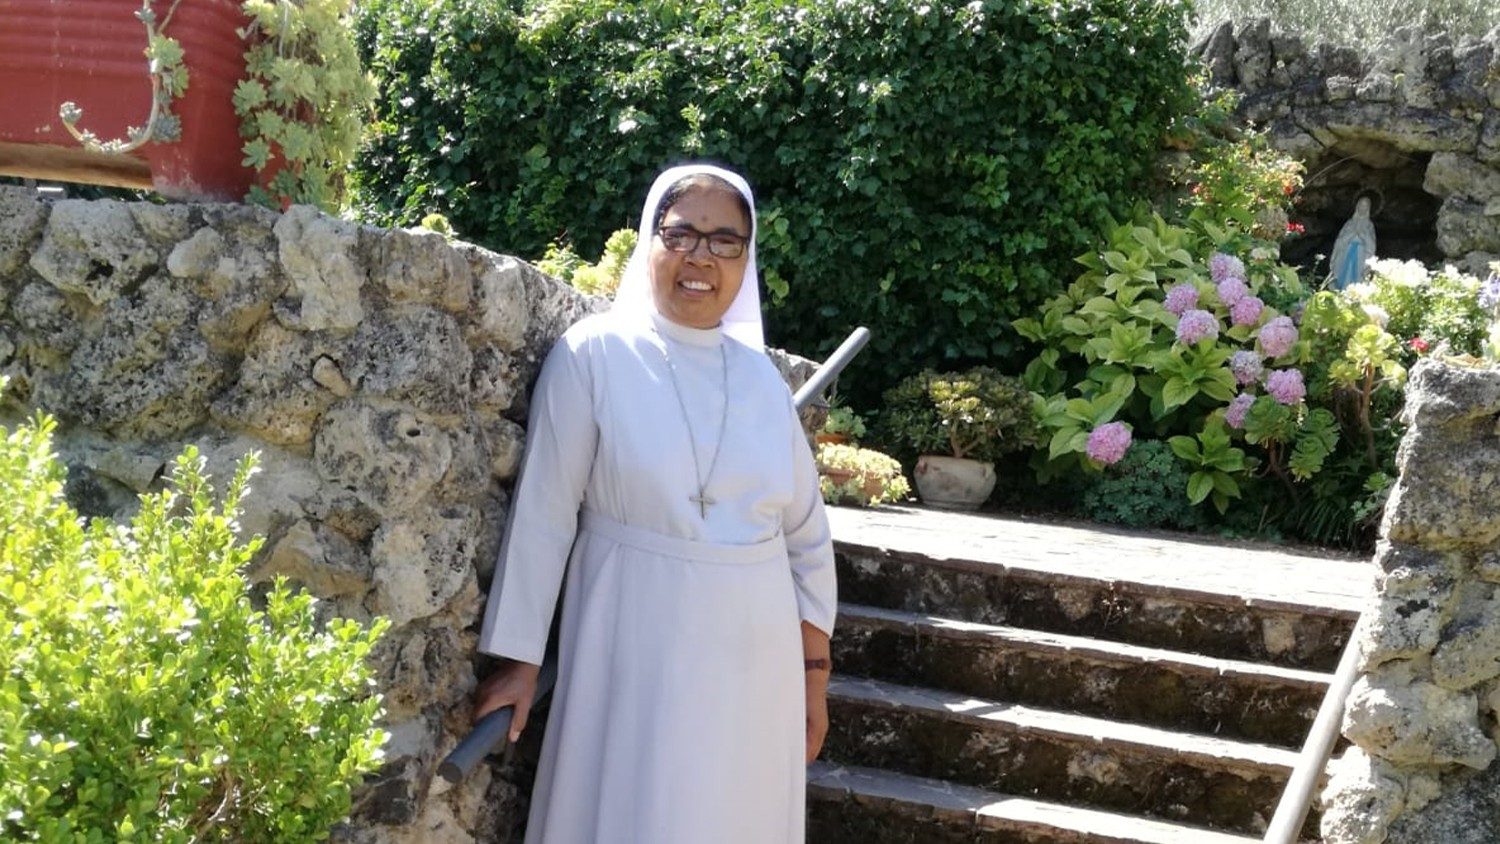 L'infermiera anti-Covid del presepe 2020 donata al Vescovo di Verona /  Attualità / Home - Verona Fedele